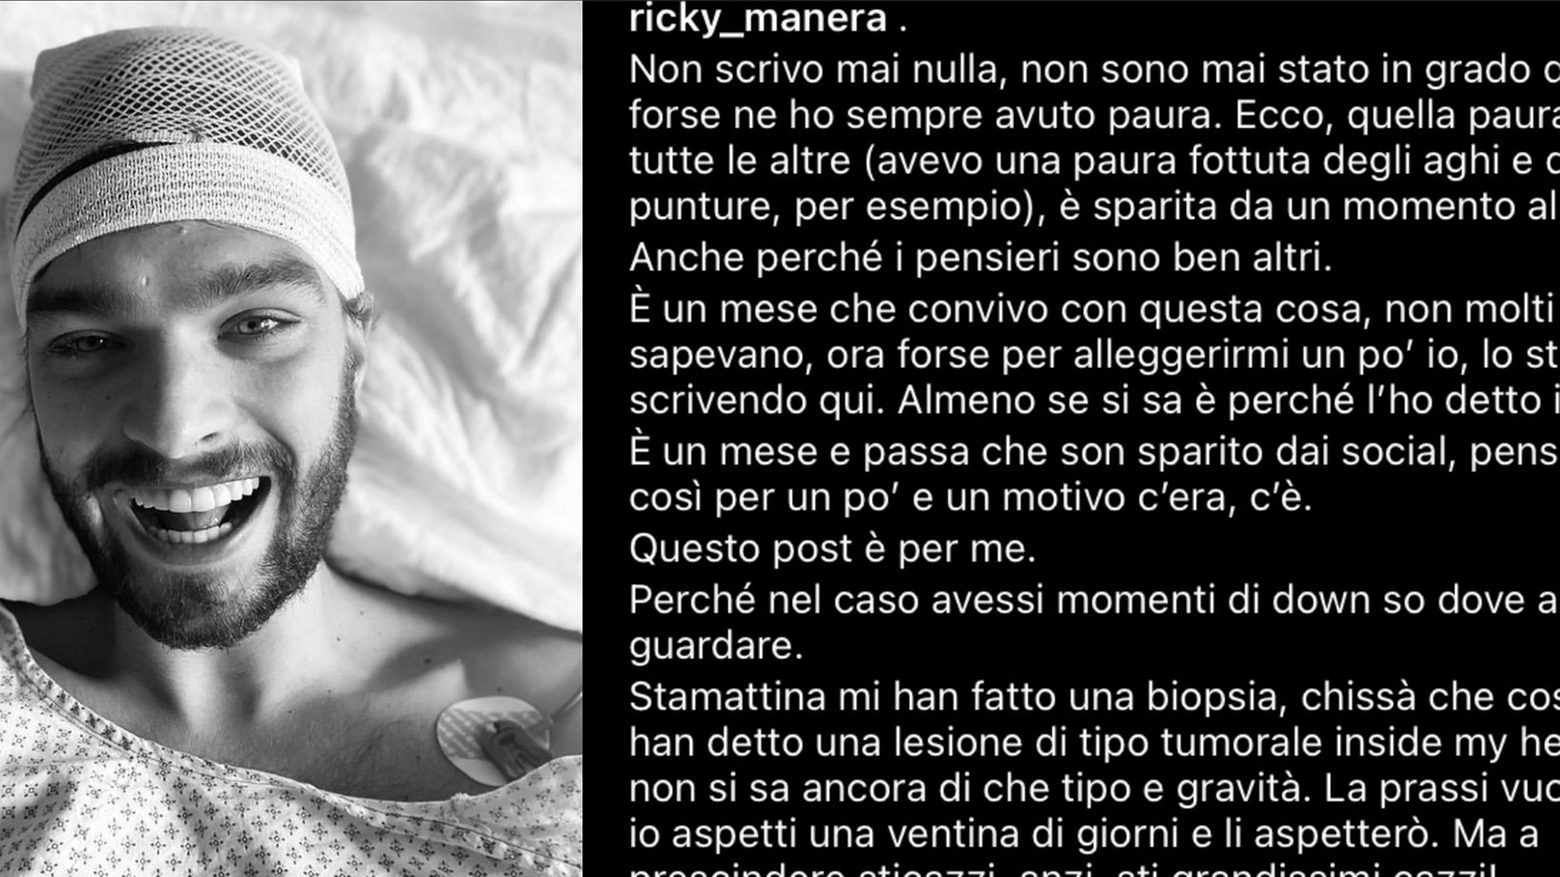 Il post dell'attore Riccardo Manera